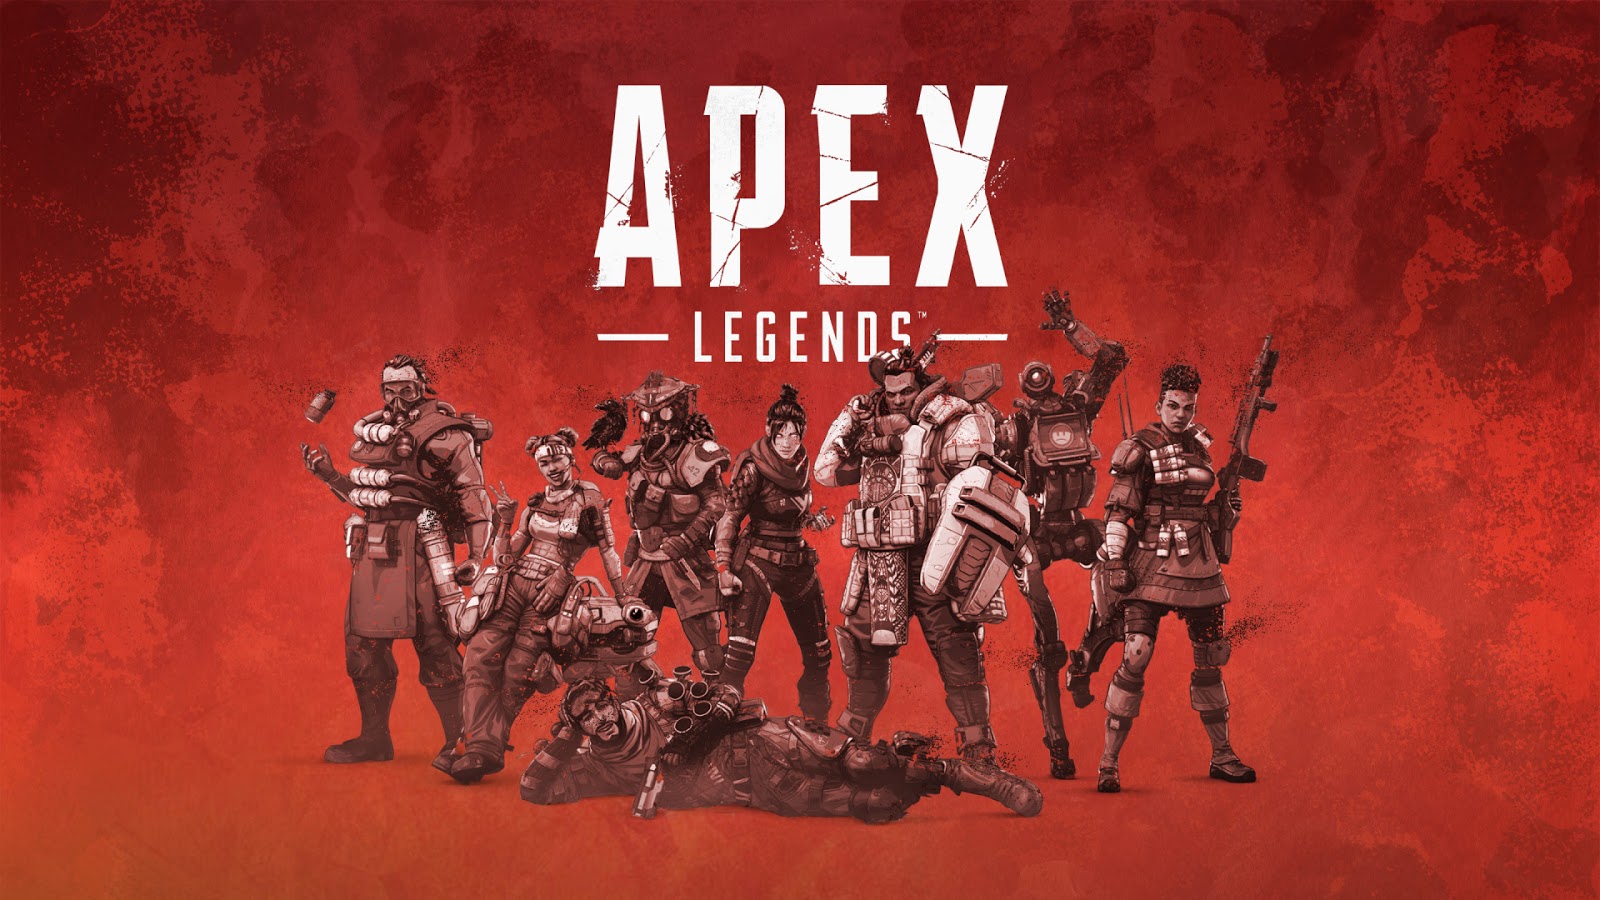 APEX LEGENDS, premiado como o Melhor Jogo Multiplayer de 2019, lança sua  quarta temporada! - Tycoon 360